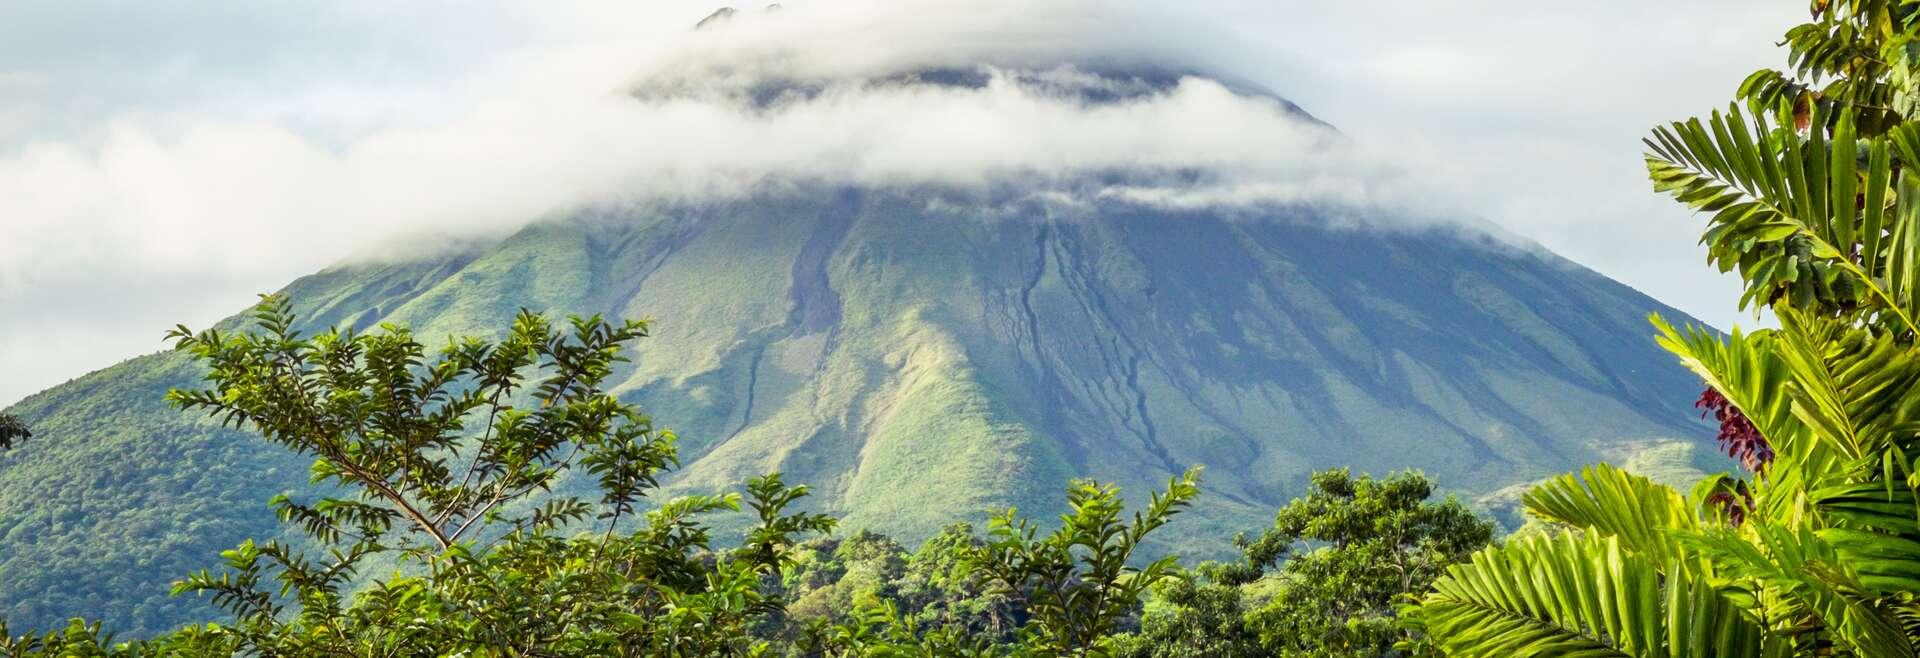 Sprachaufenthalt Costa Rica, Vulkan